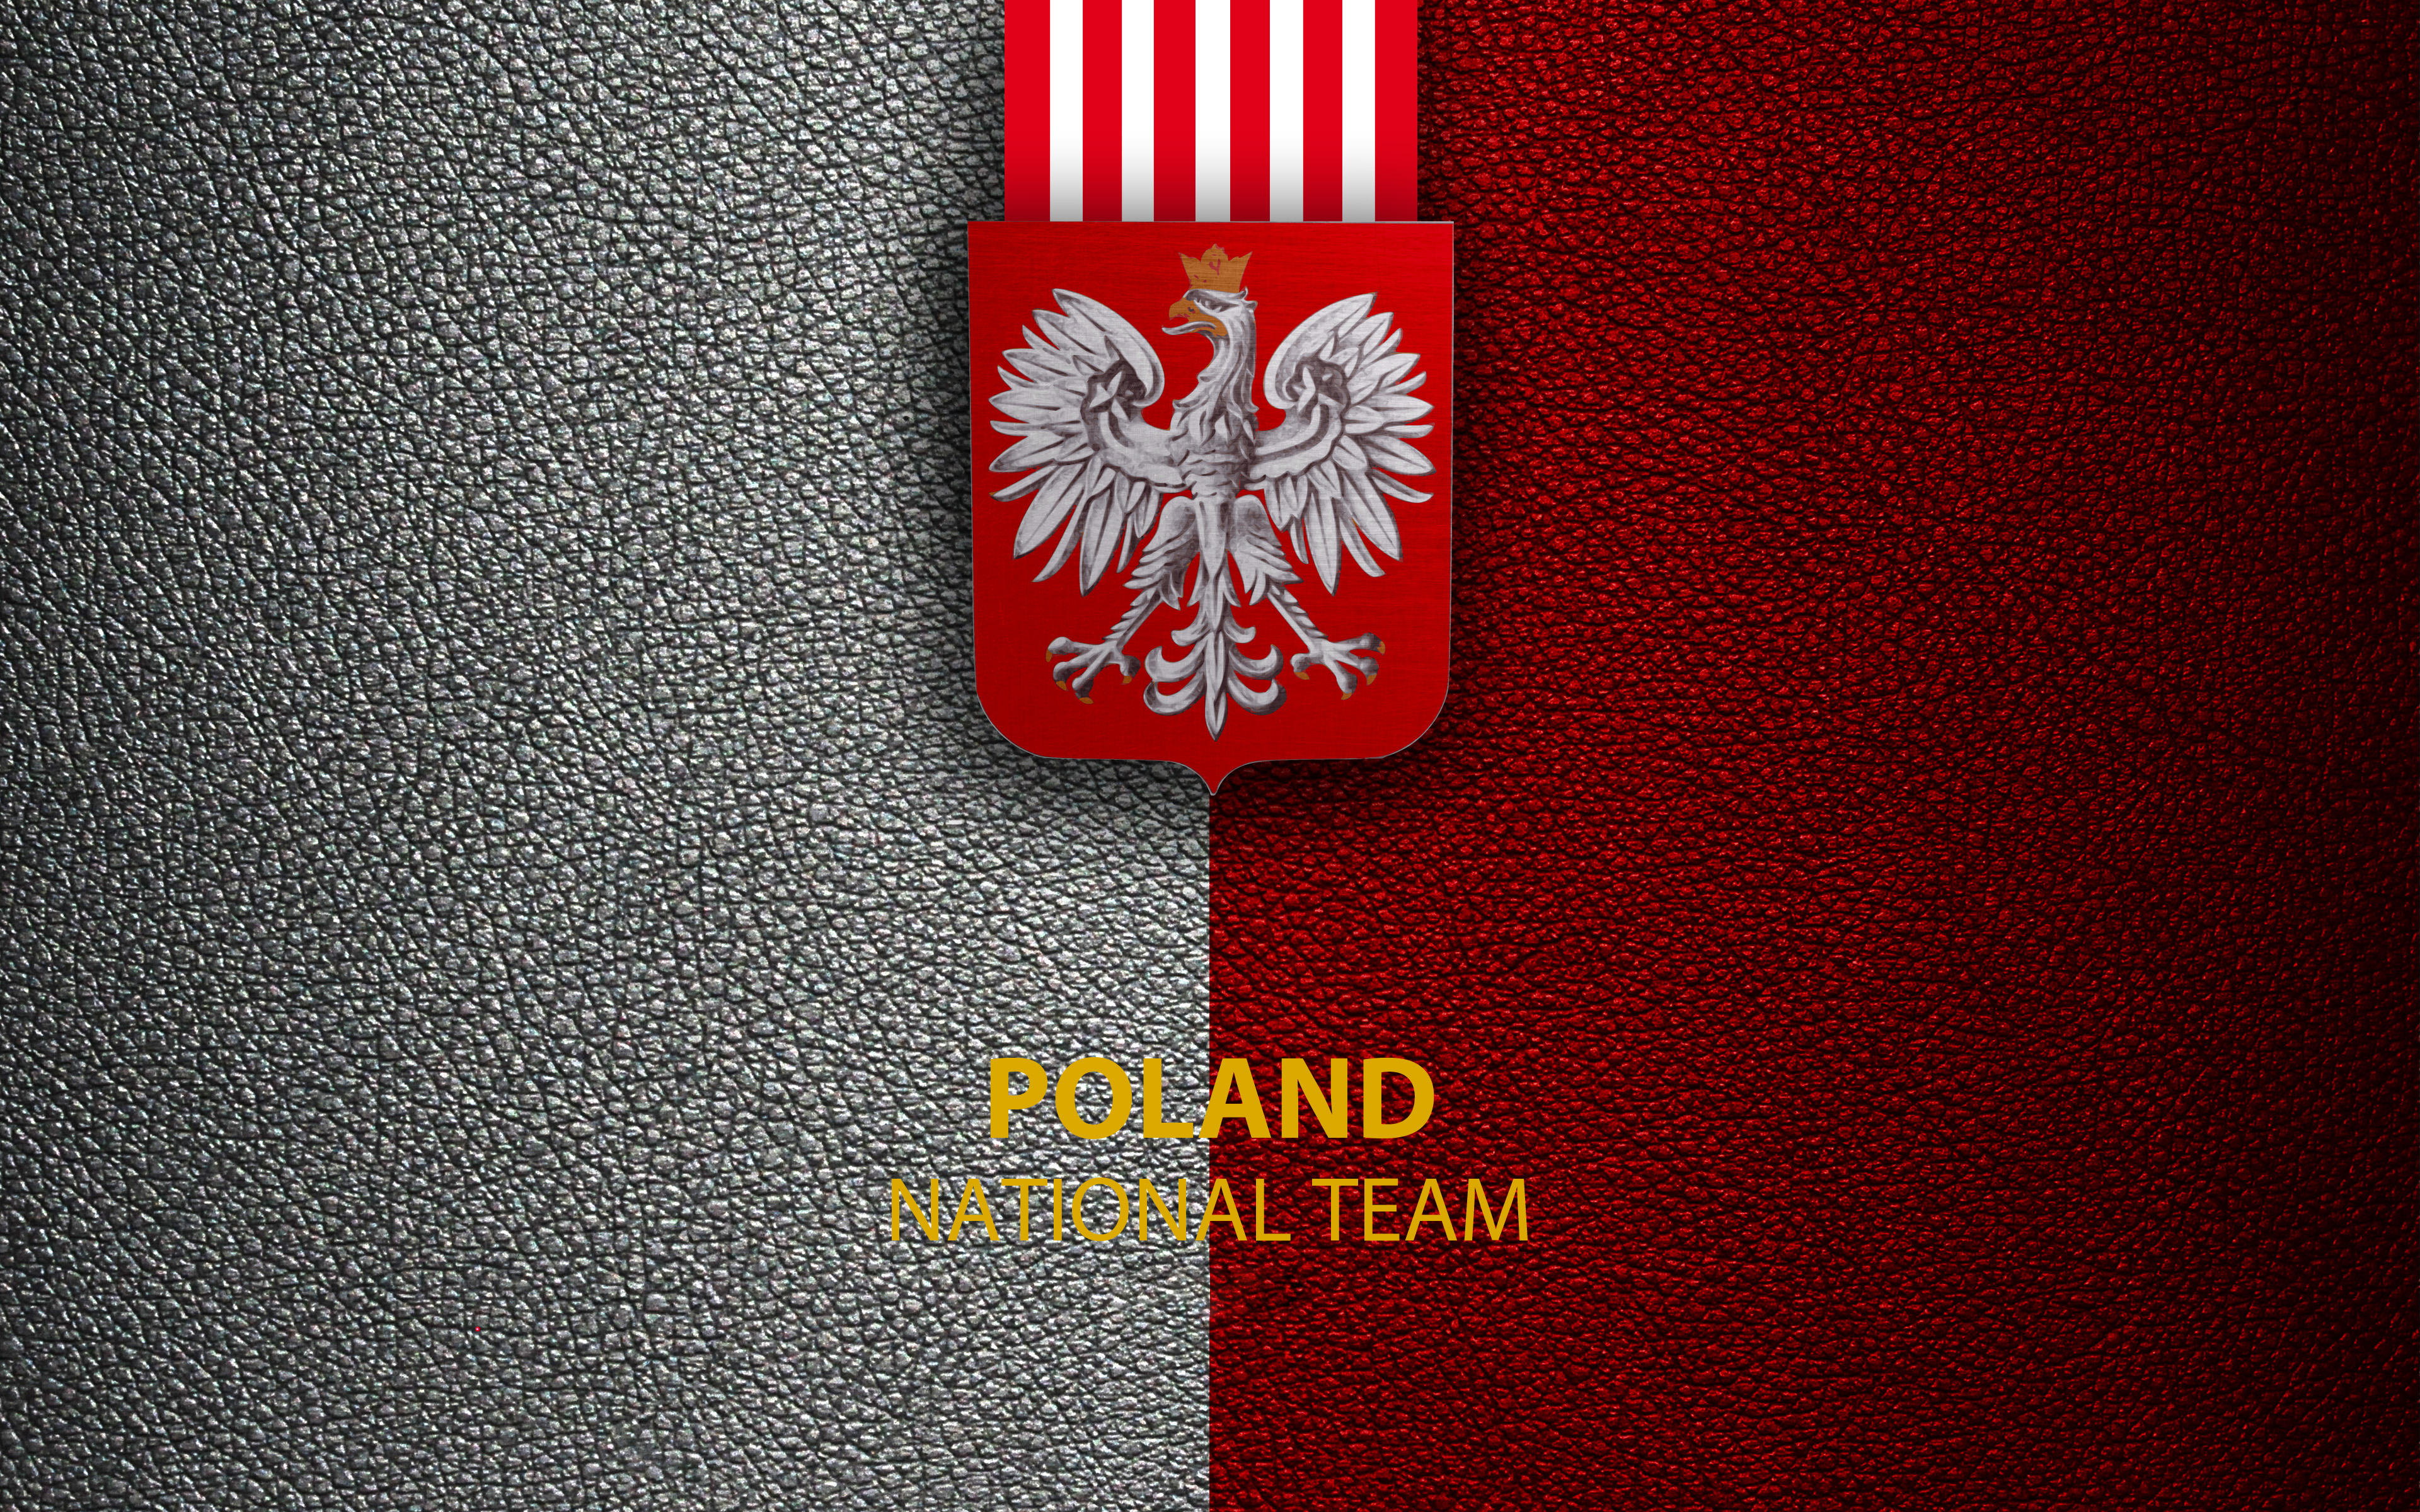 Скачать обои Сборная Польши По Футболу на телефон бесплатно